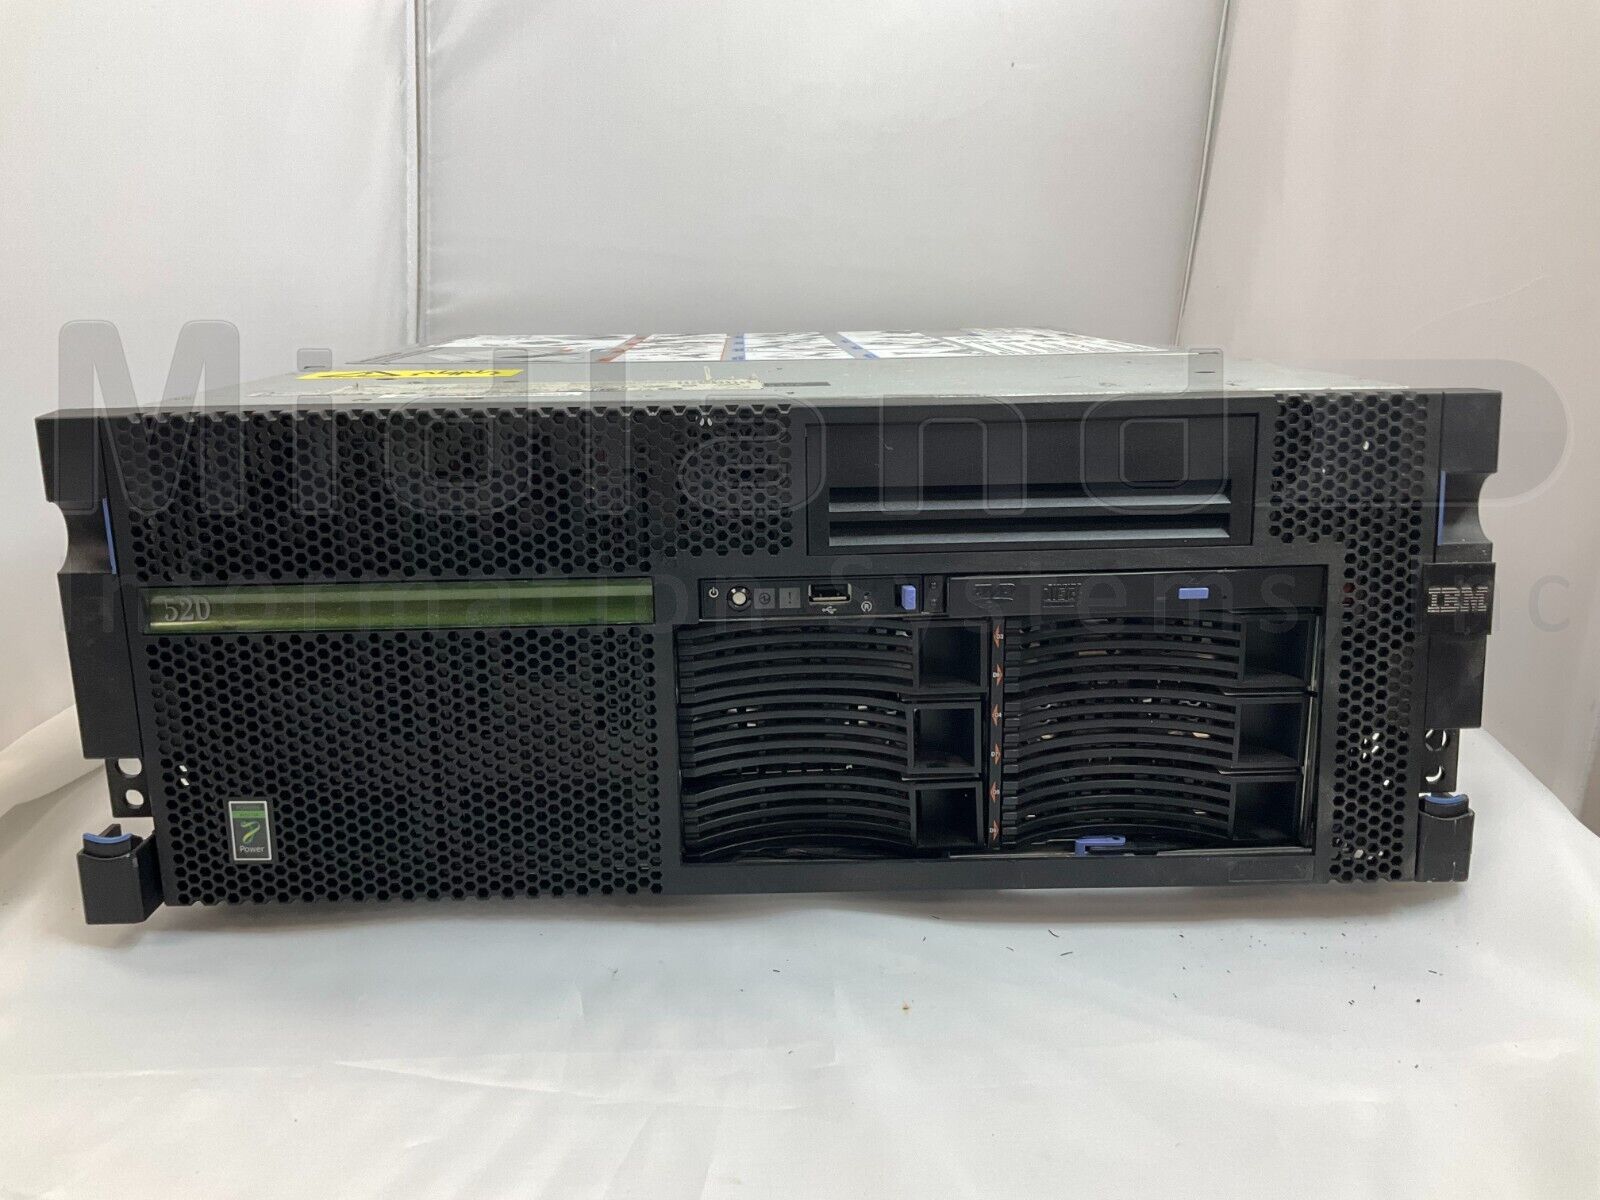 IBM 9408-M25 iSeries Power 520 Server, 1 OS, V6R1 80 User license. 4.2GHz 2-Core